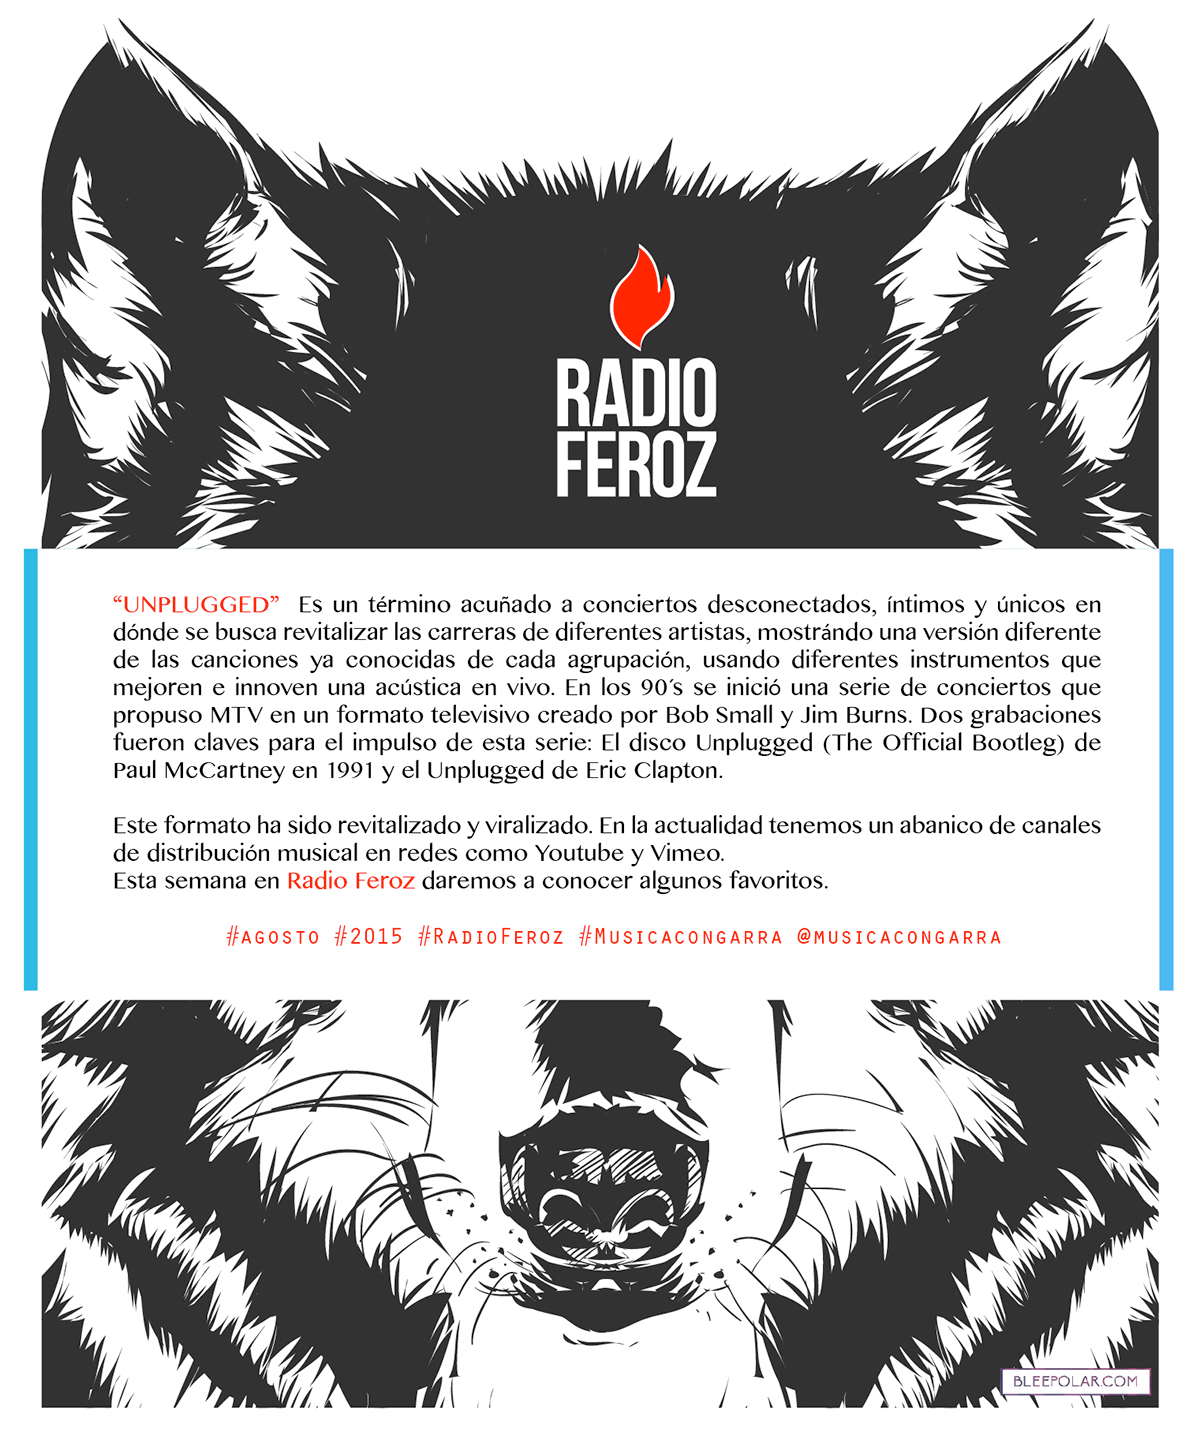 branding radioferoz musciacongarra radioferoz Julietaferoz 